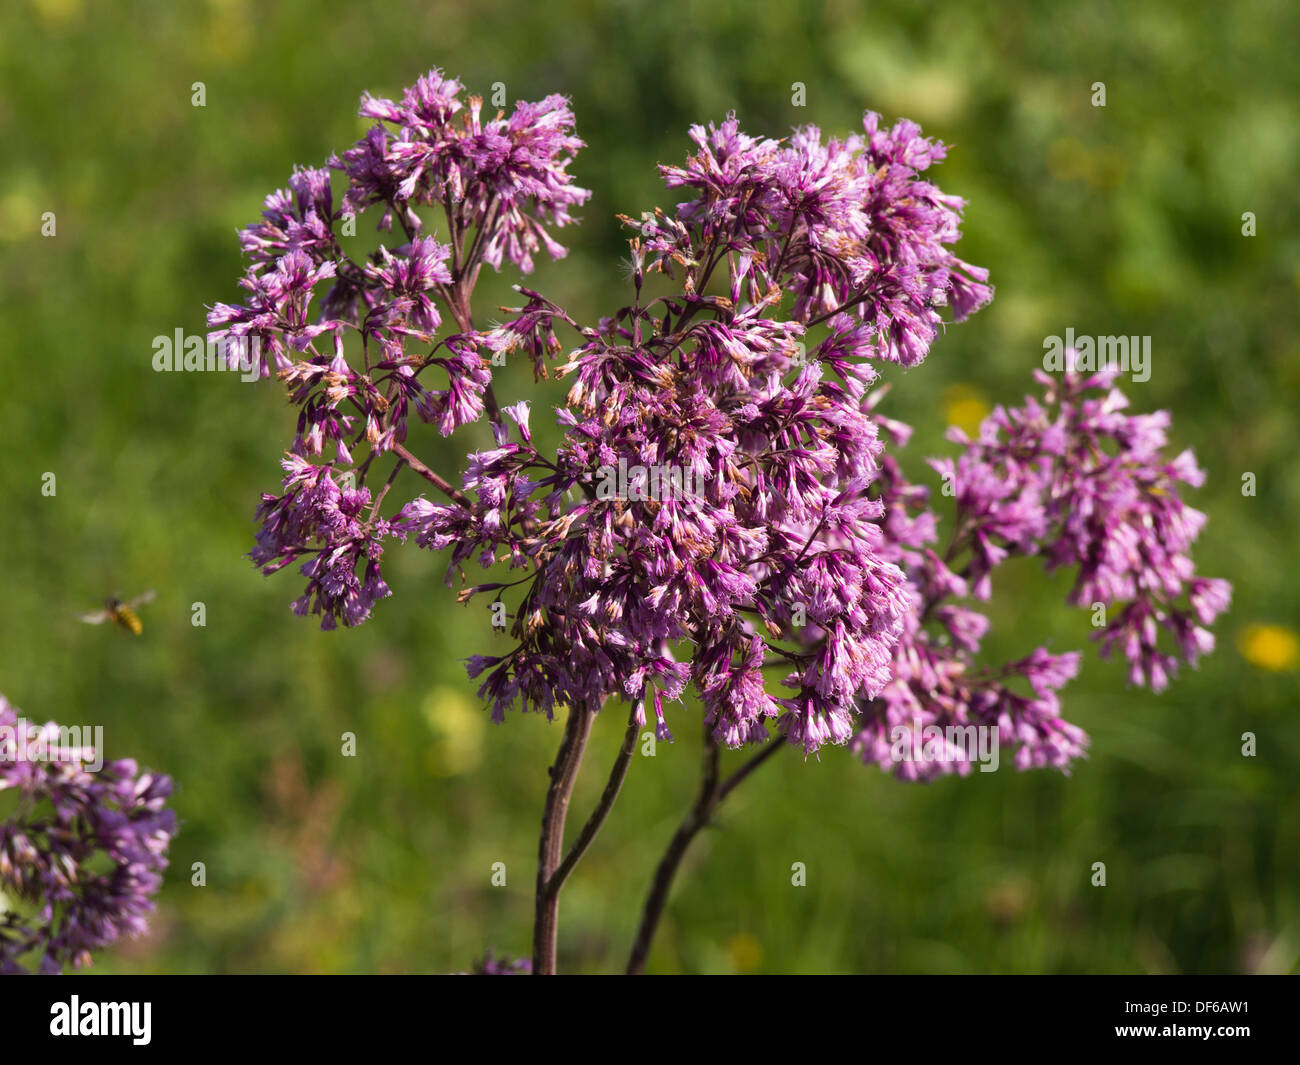 Probablement Adenostyles alliariae fleurs alpestres dans une prairie de montagne suisse Banque D'Images